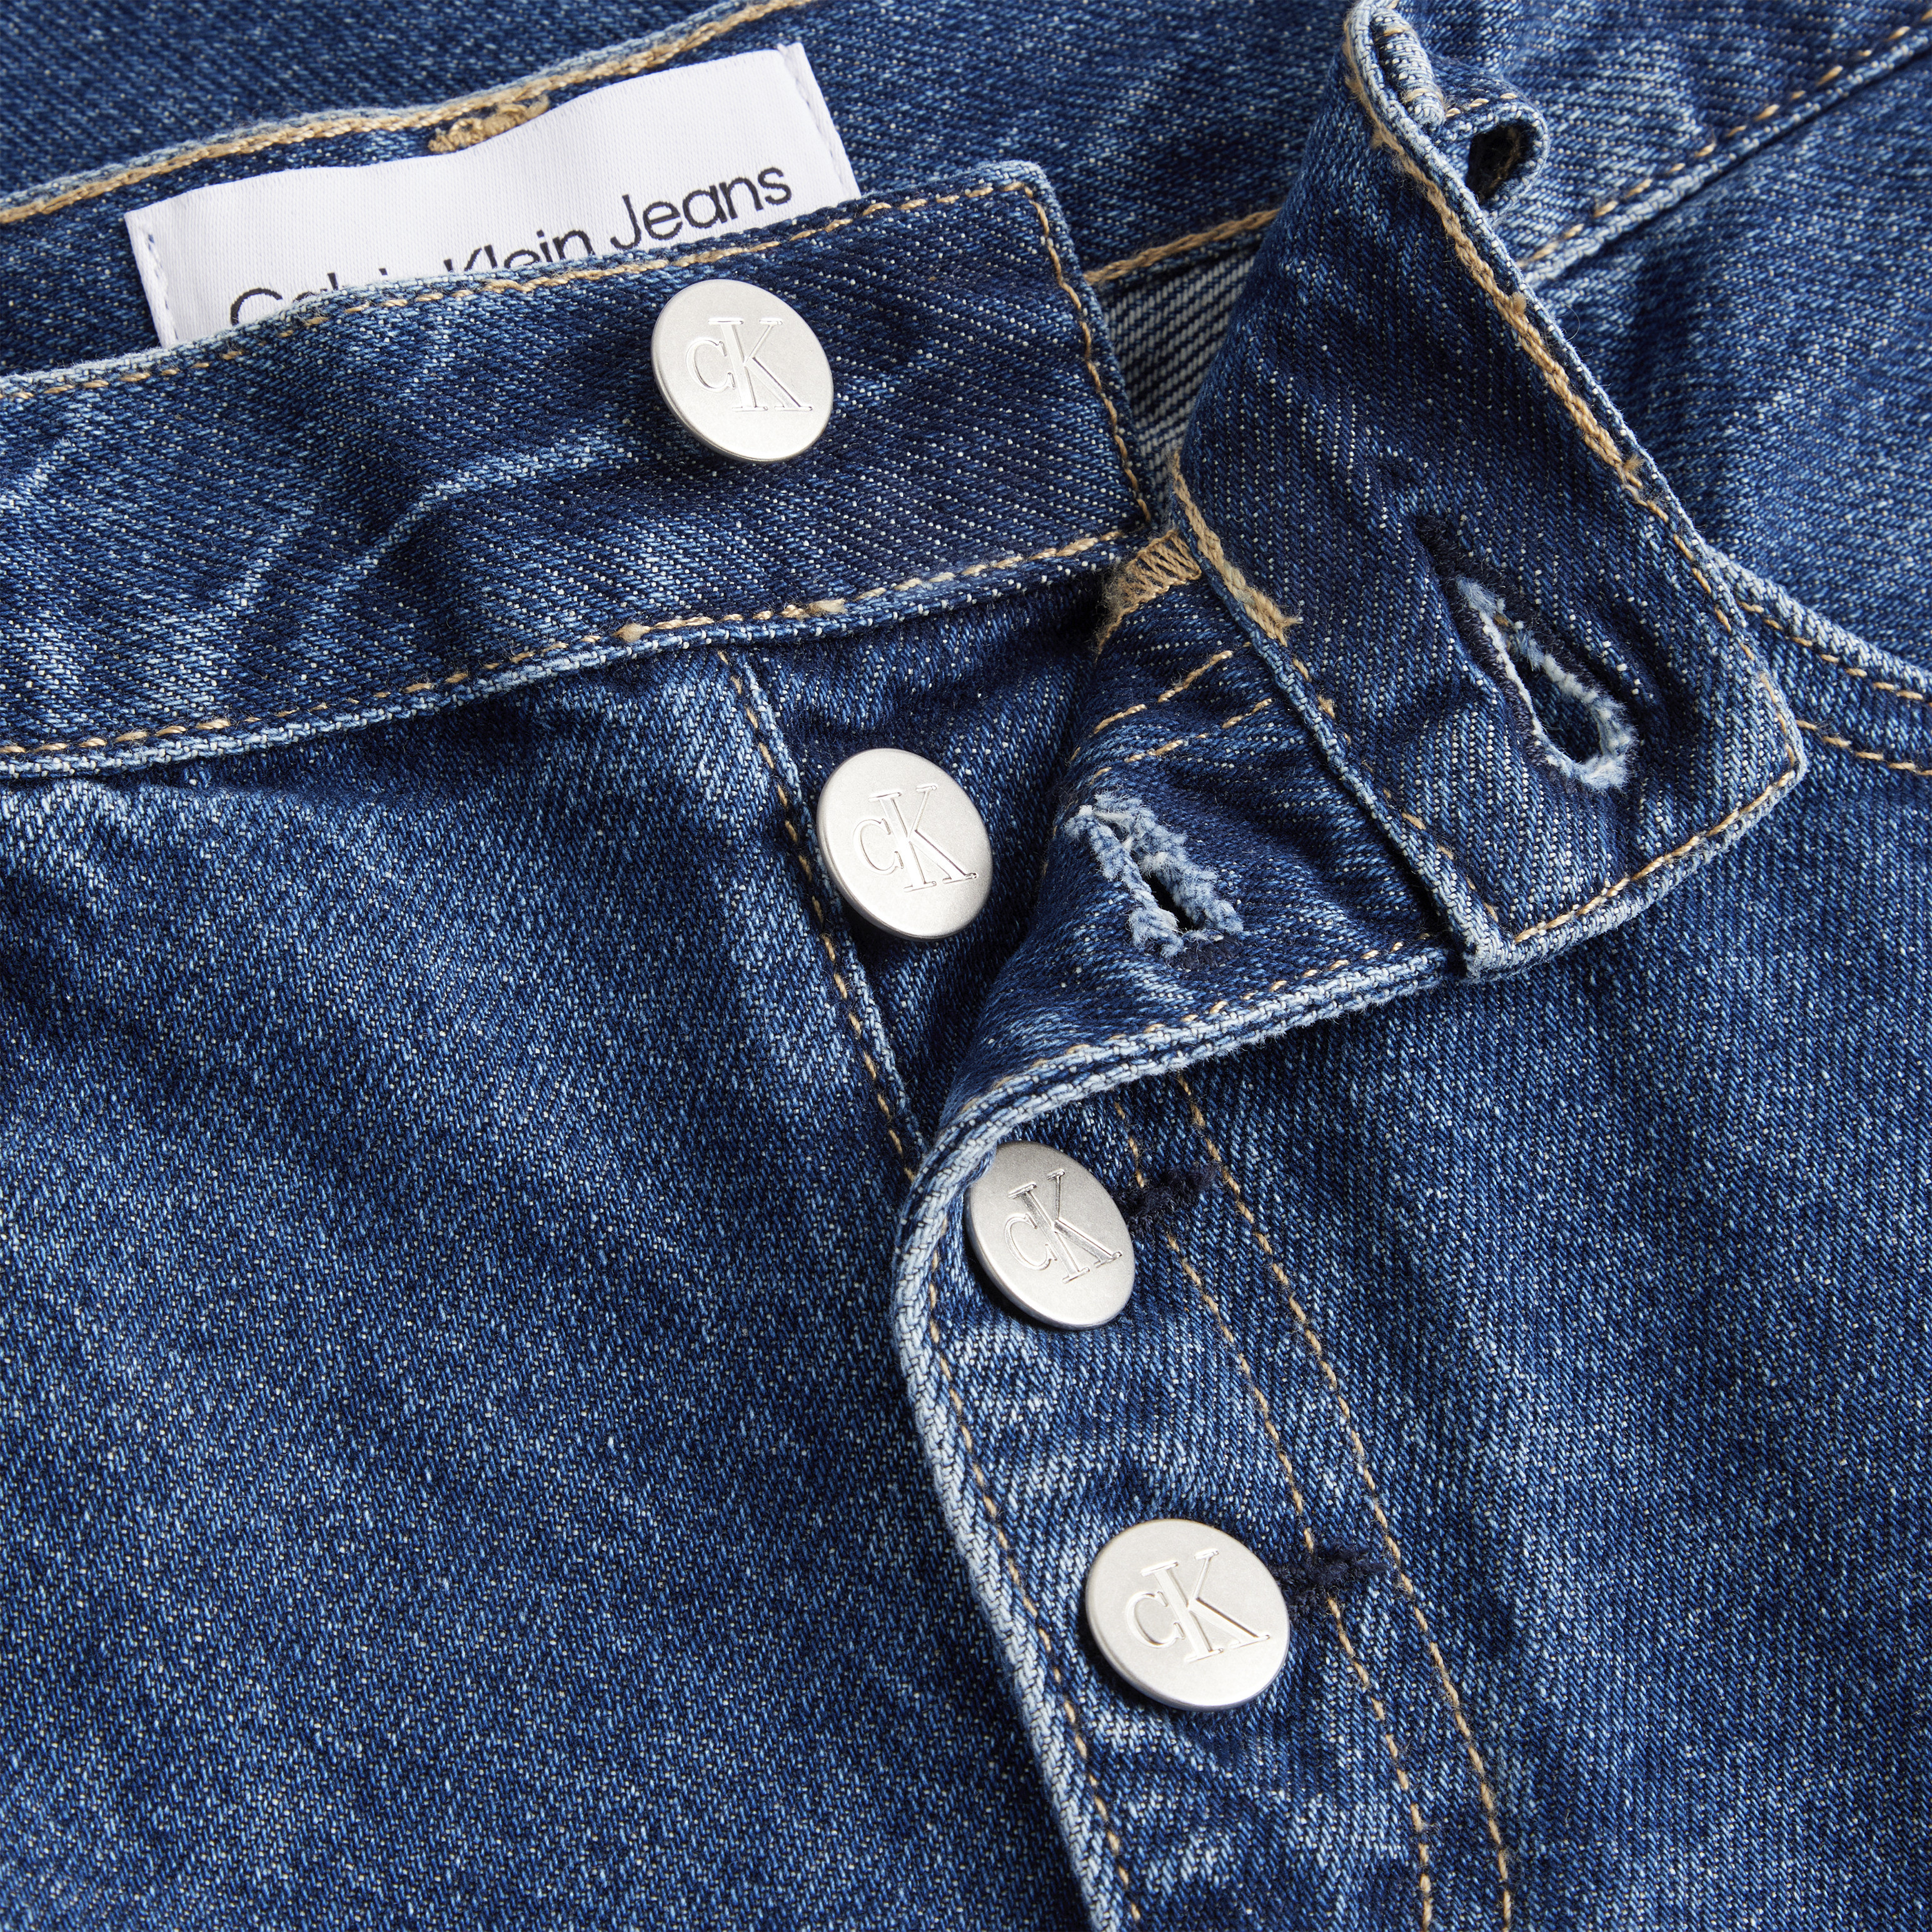 Calvin Klein Jeans - Shorts in denim Mom fit, Denim, large image number 2